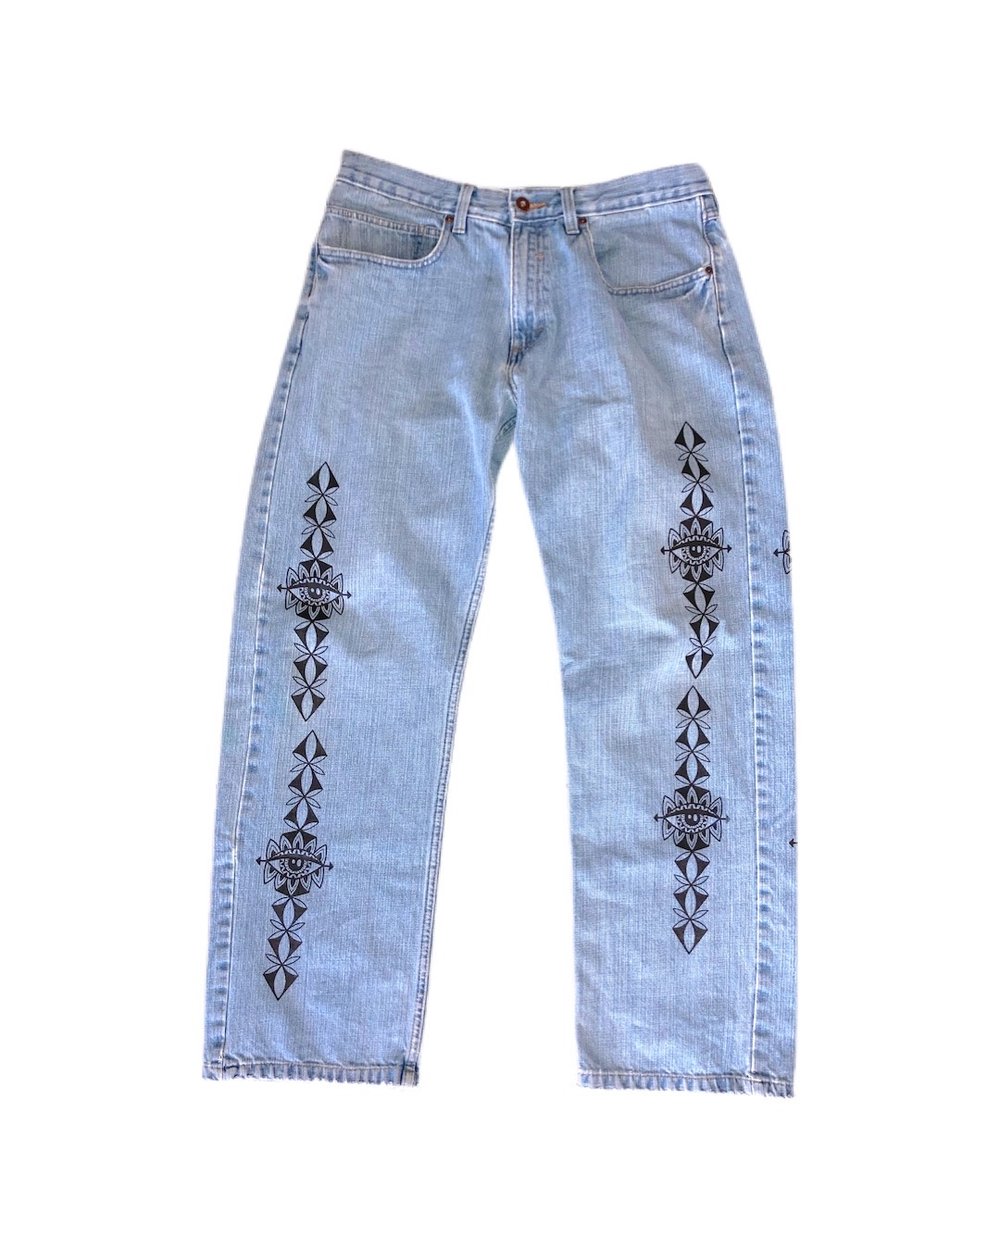 Image of “Bloom” Denim Jeans